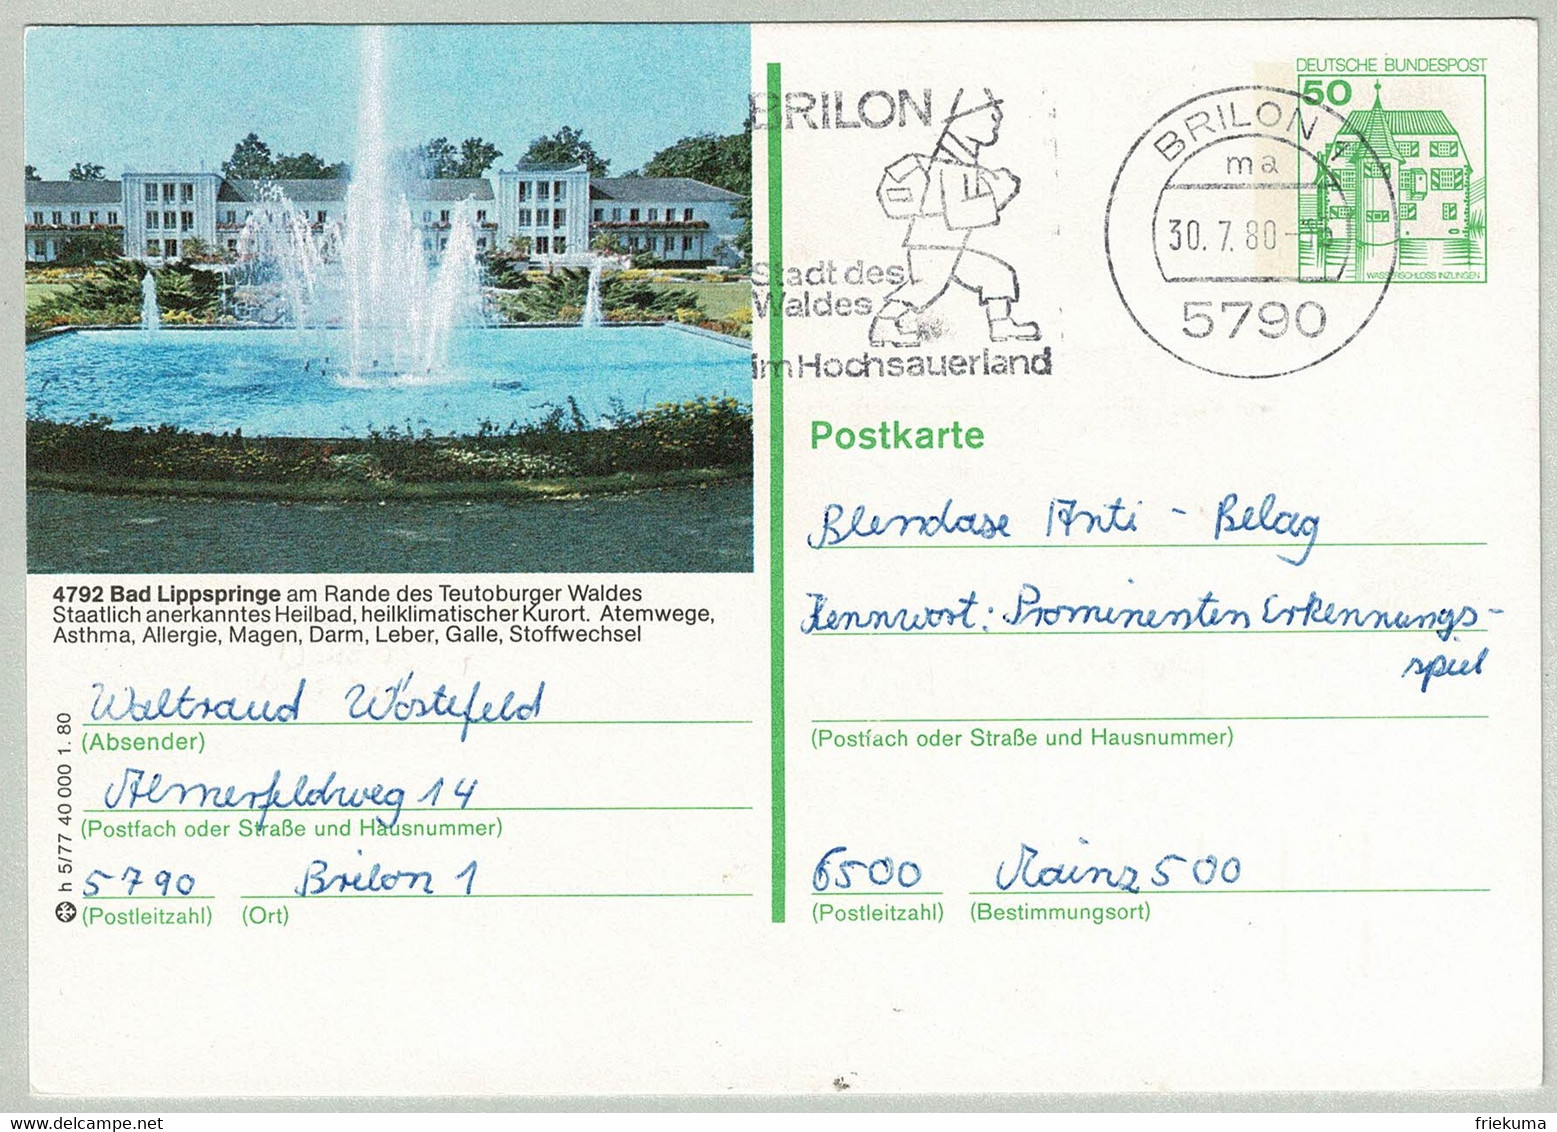 Deutsche Bundespost 1980, Bildpostkarte Wasserschloss Inzlingen Bad Lippspringe Brilon - Mainz, Schloss/Château/Castle - Bäderwesen